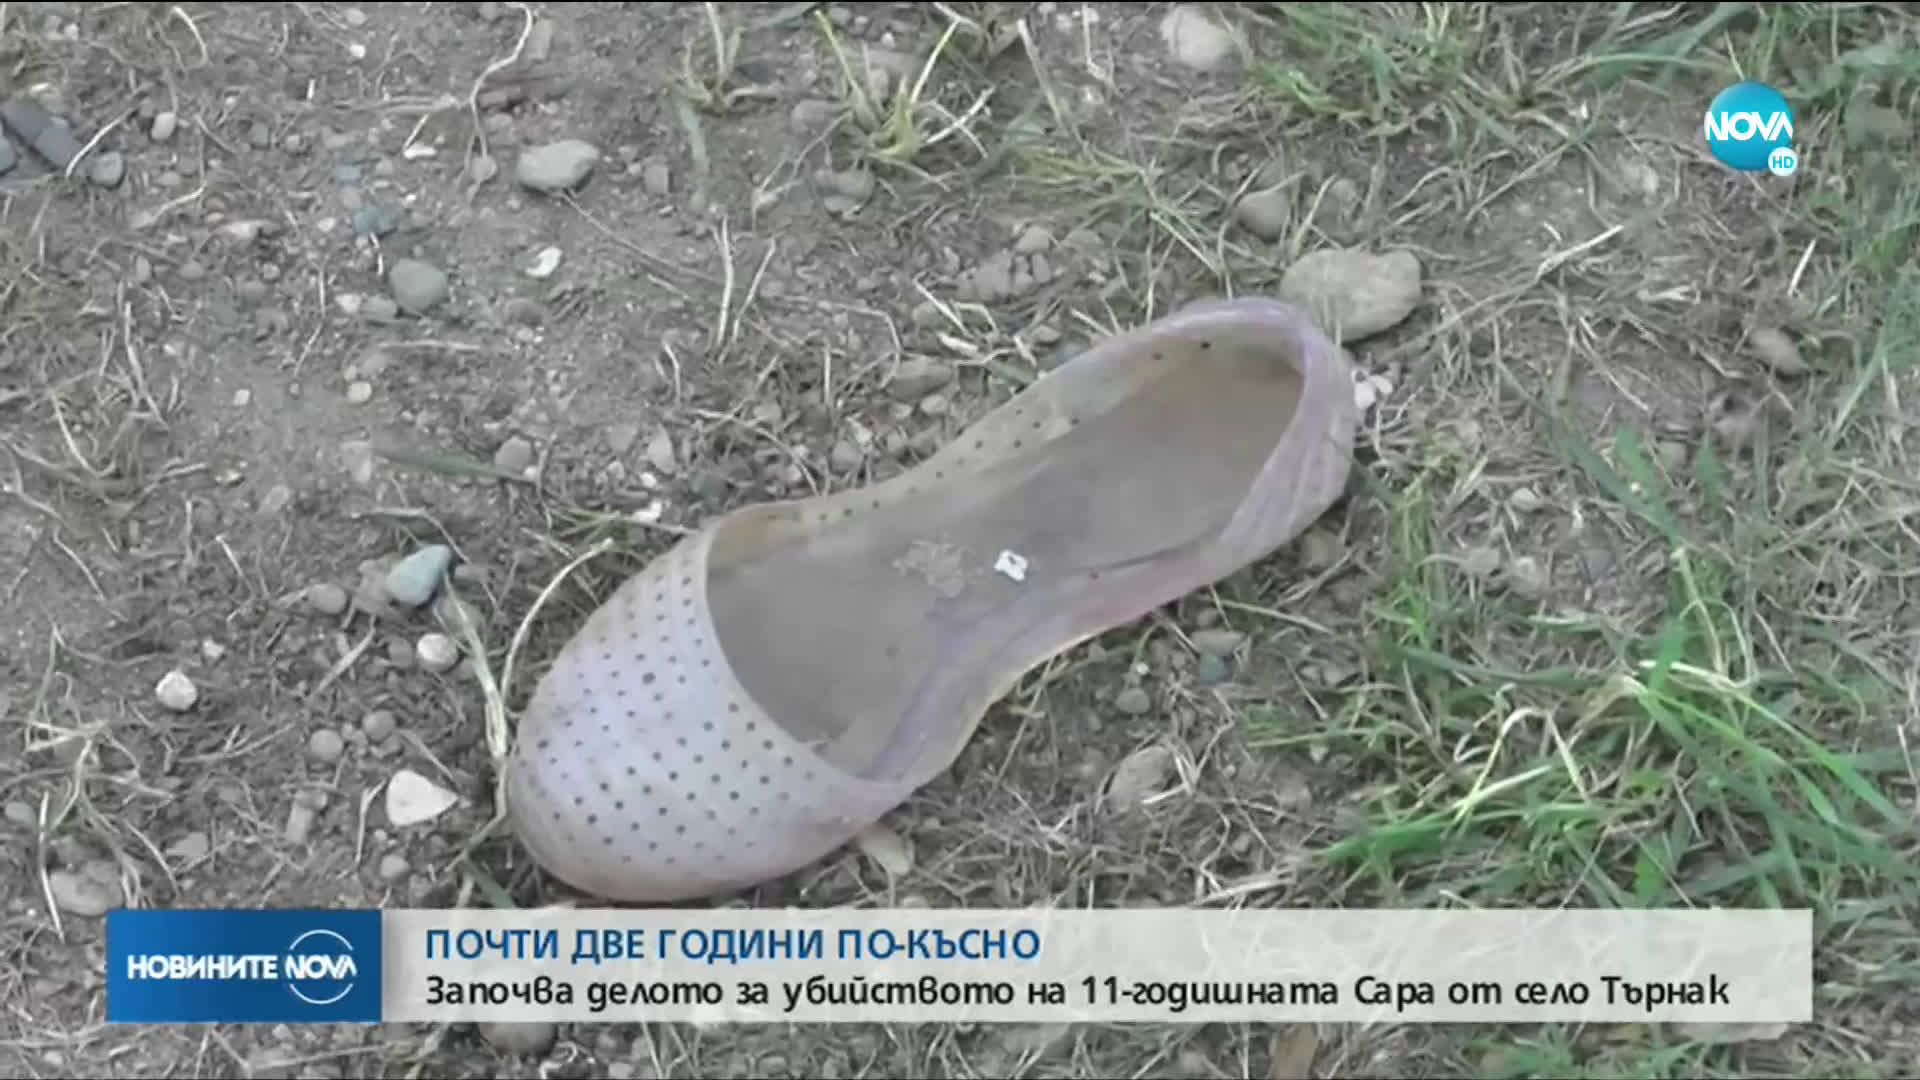 Започва делото за убийството на 11-годишната Сара от село Търнак